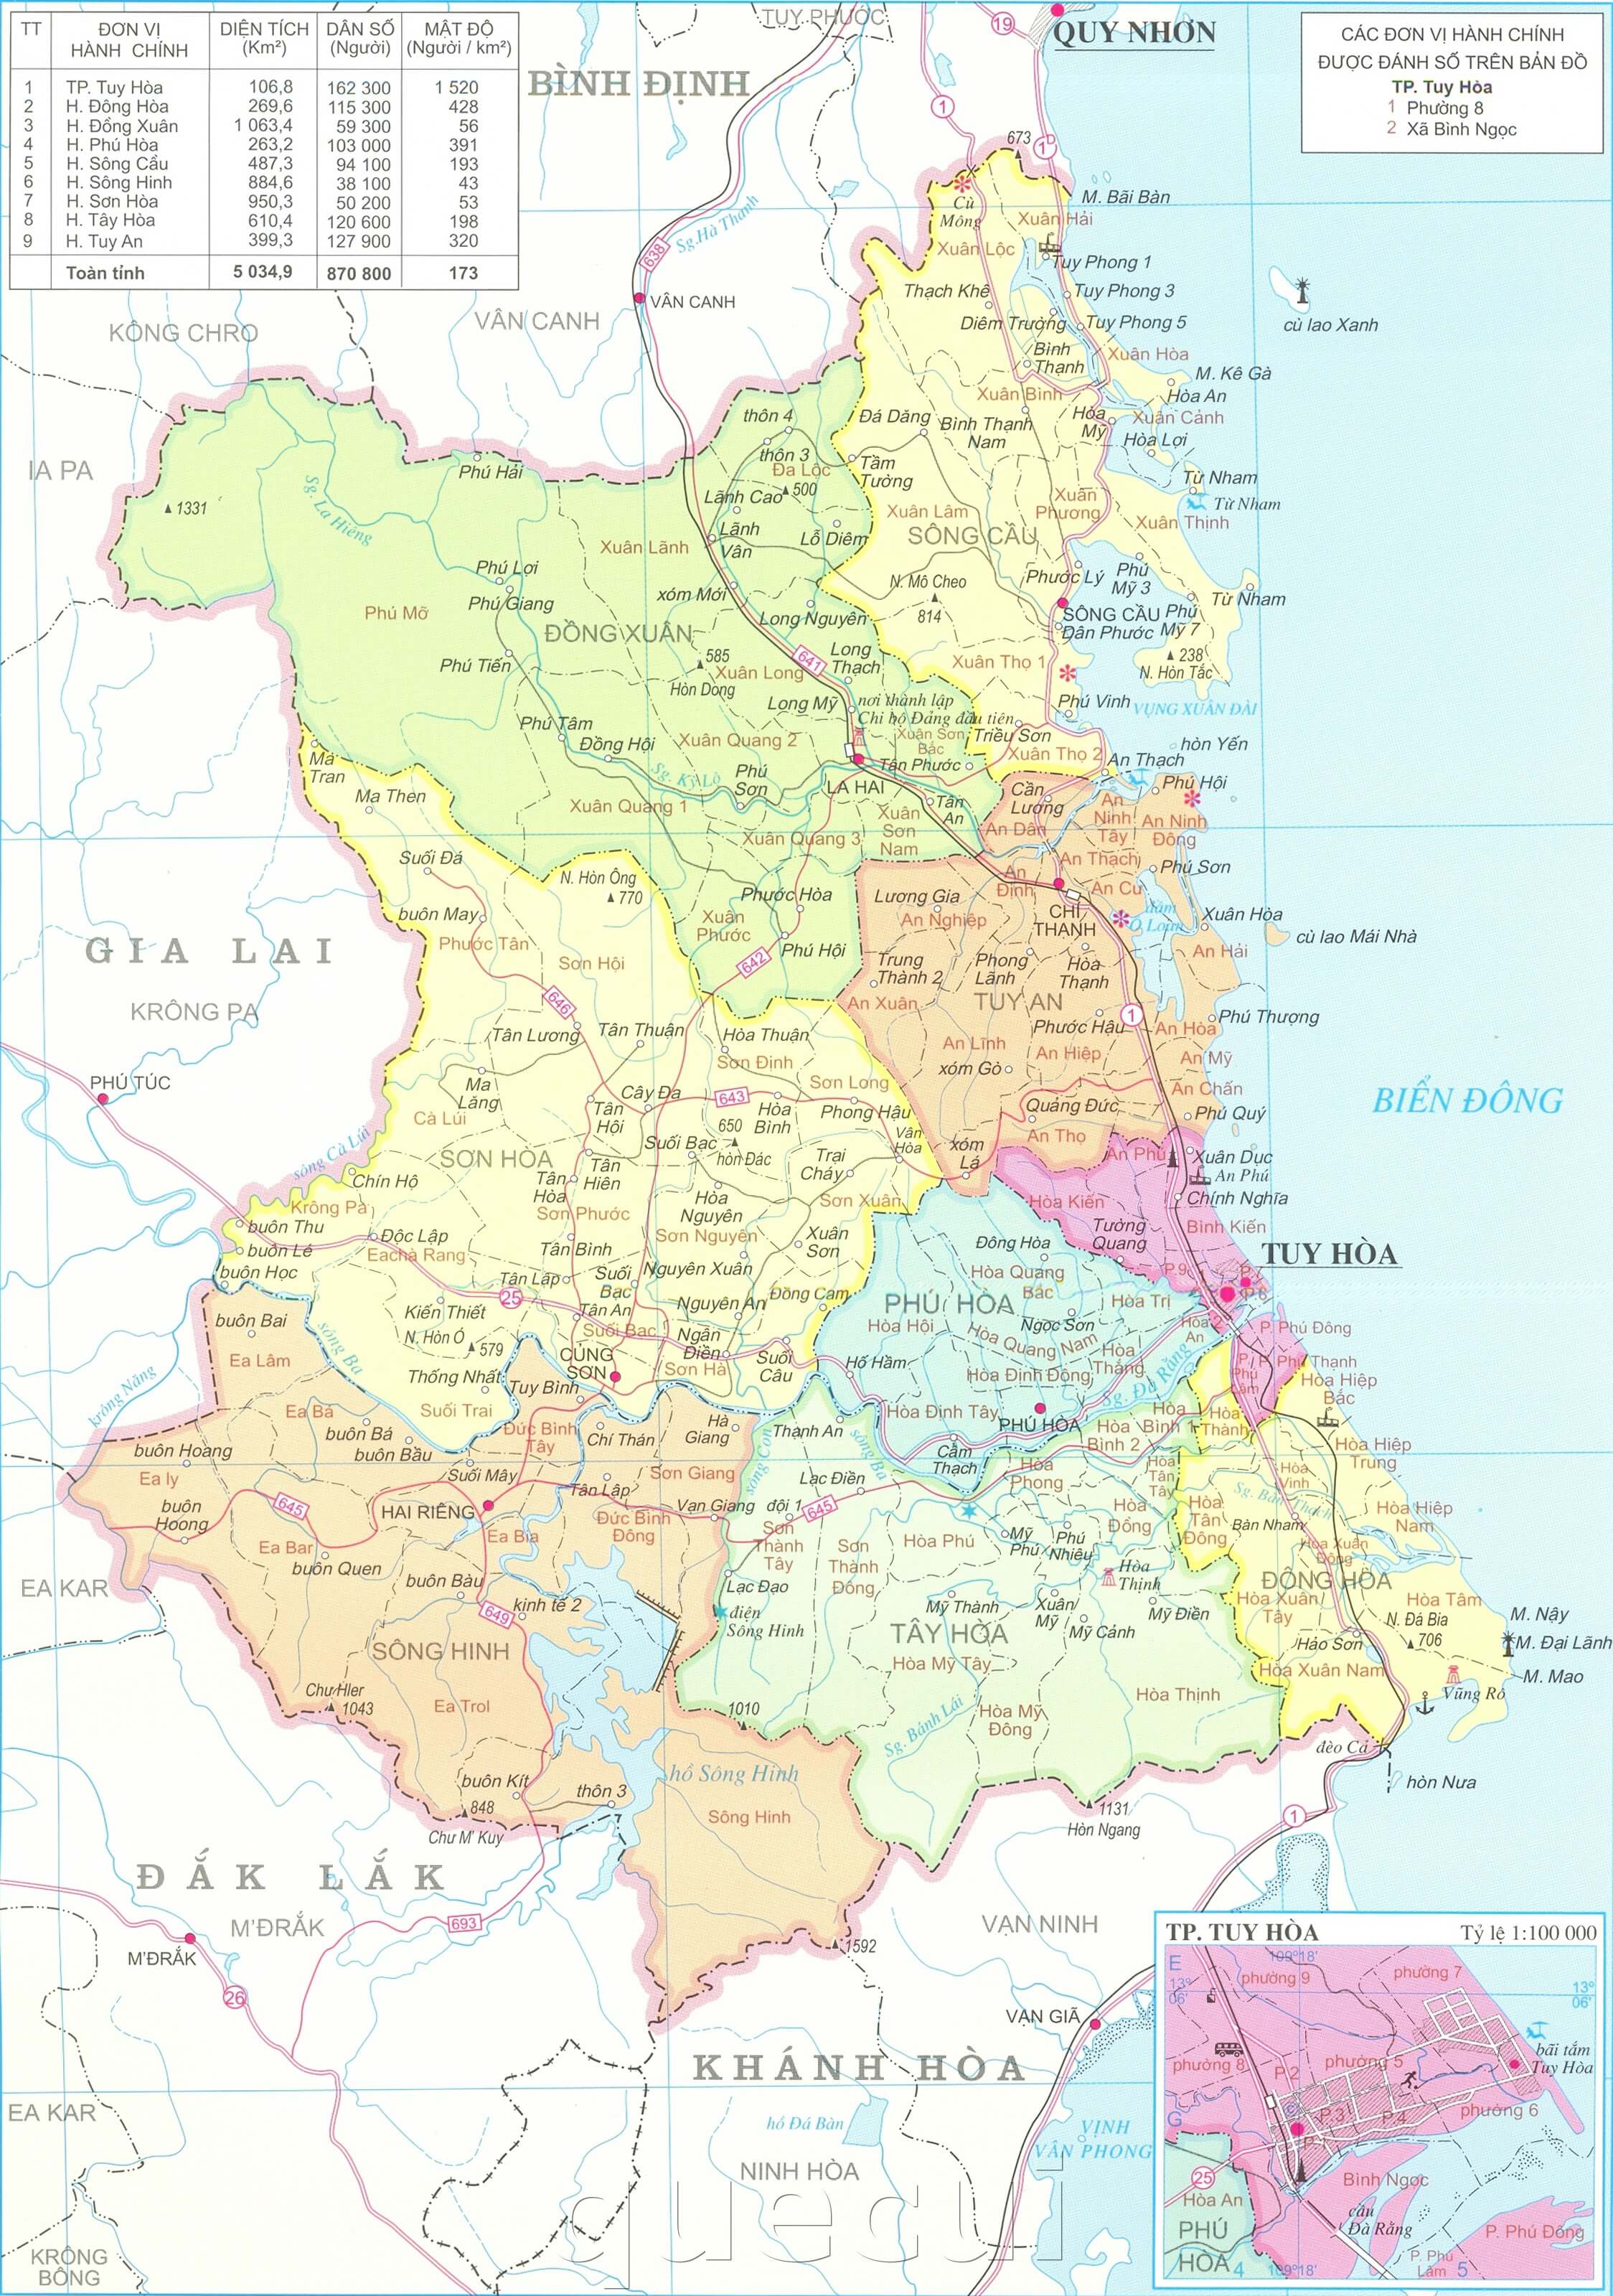 Chào mừng bạn đến với bản đồ Phú Yên mới nhất năm 2024! Với thông tin cập nhật về đường đi, điểm tham quan và ẩm thực địa phương tại Phú Yên, bạn sẽ dễ dàng lên kế hoạch cho chuyến du lịch tuyệt vời của mình.